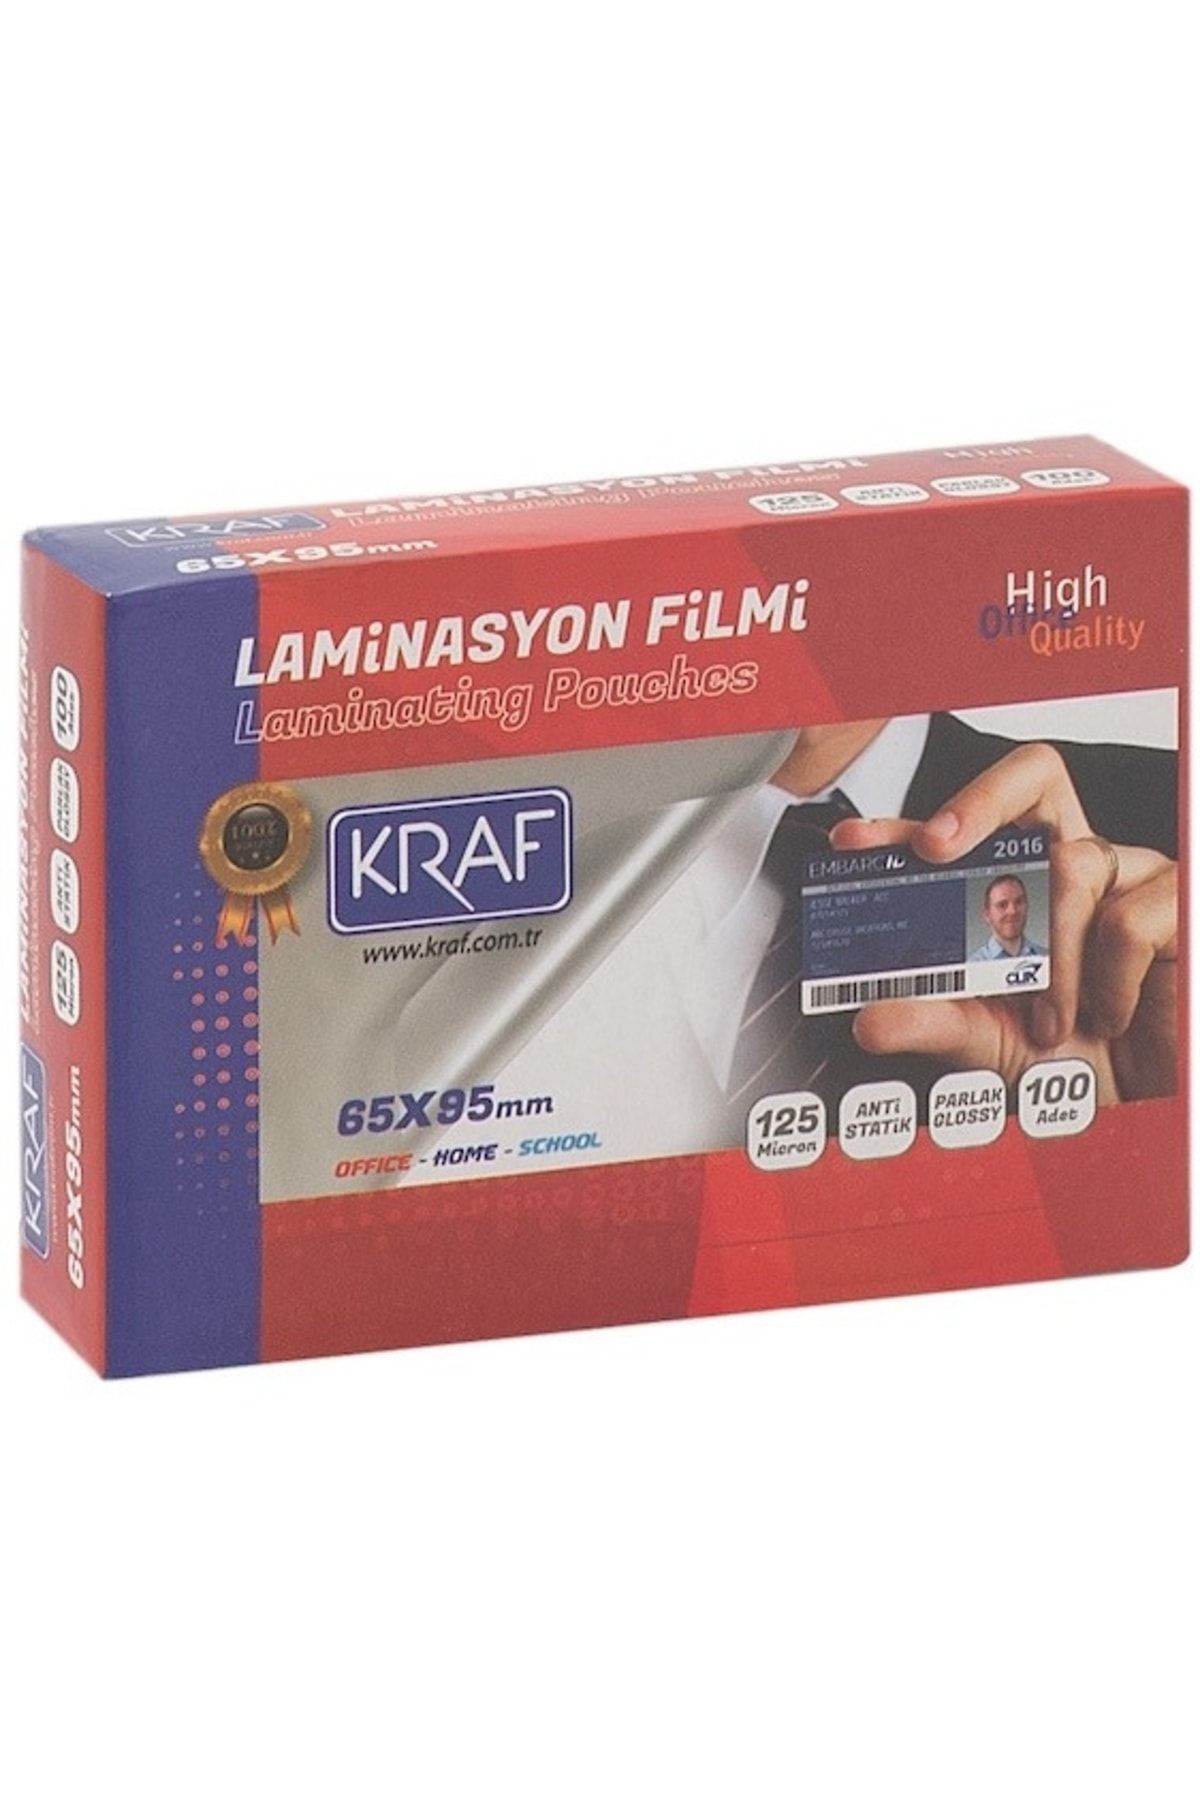 KRAF Laminasyon Filmi 65x95 Mm 125mıc 100lü 2126